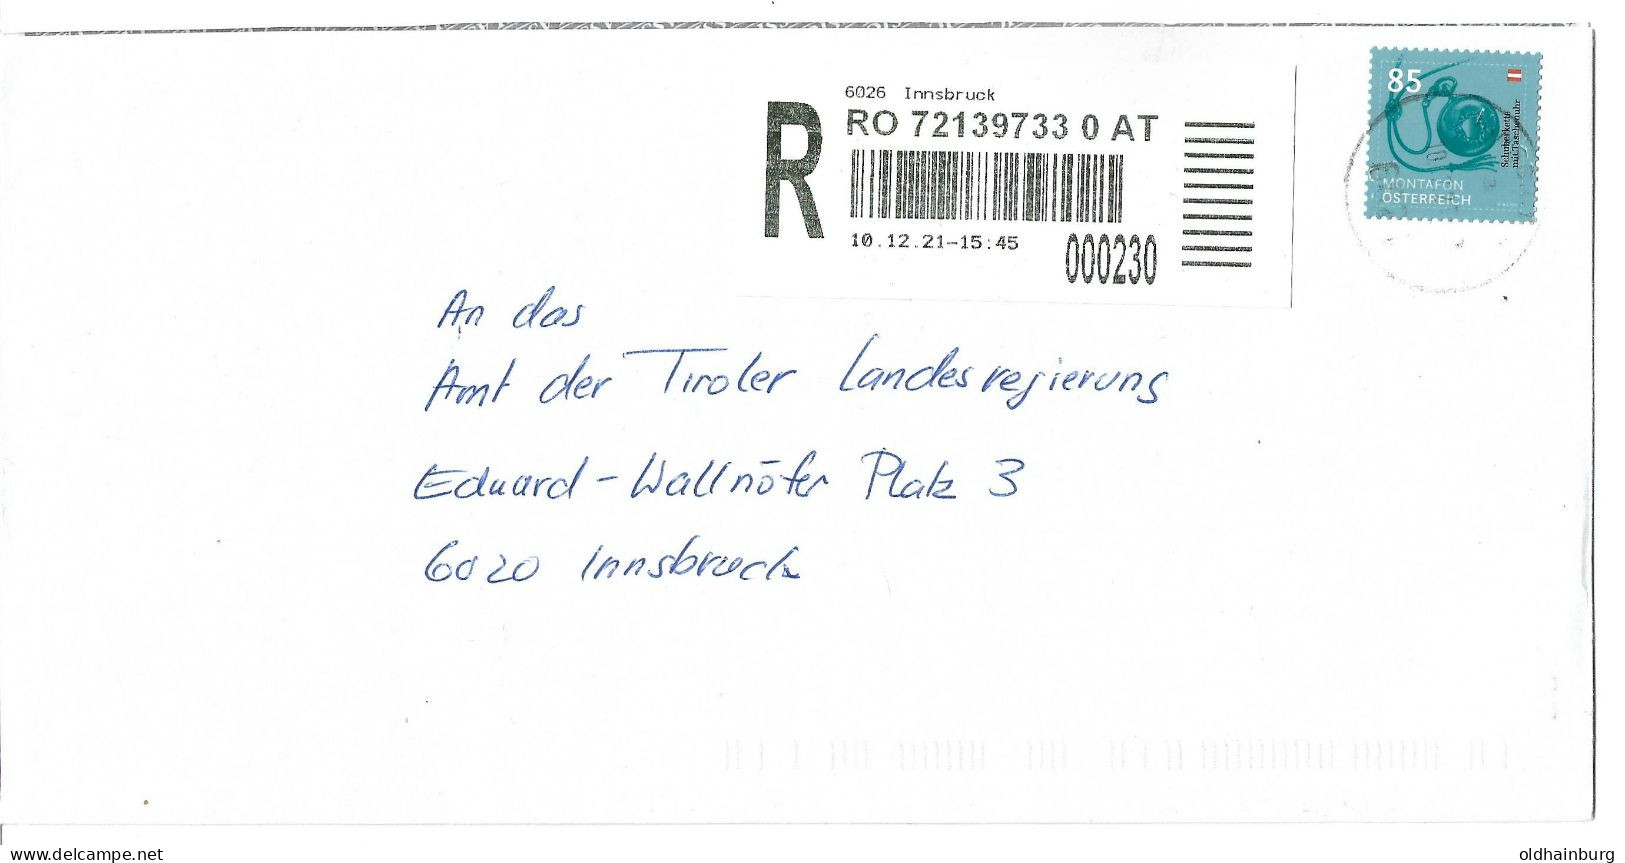 0452g: Österreich 2020, Beiwerk & Auszier Schuberkette Mit Taschenuhr, Montafon, Reko 6020 Innsbruck - Textile